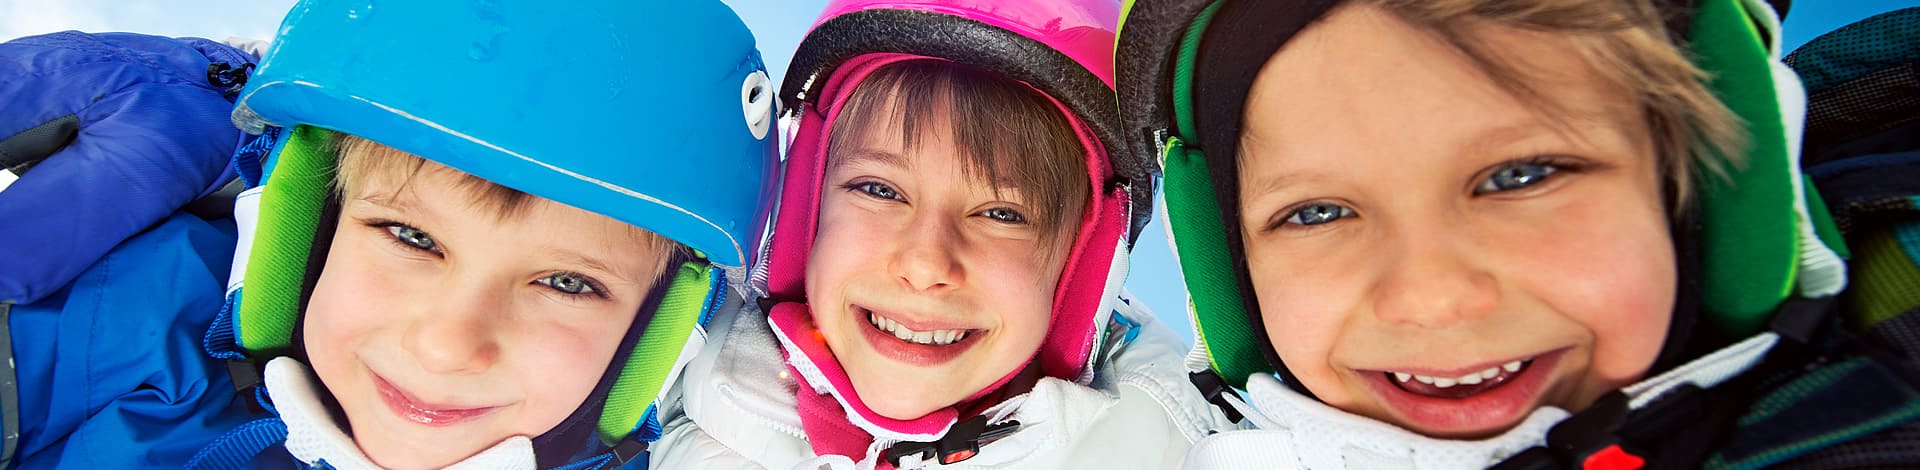 Top-Skigebiete für- Kinder in den Alpen